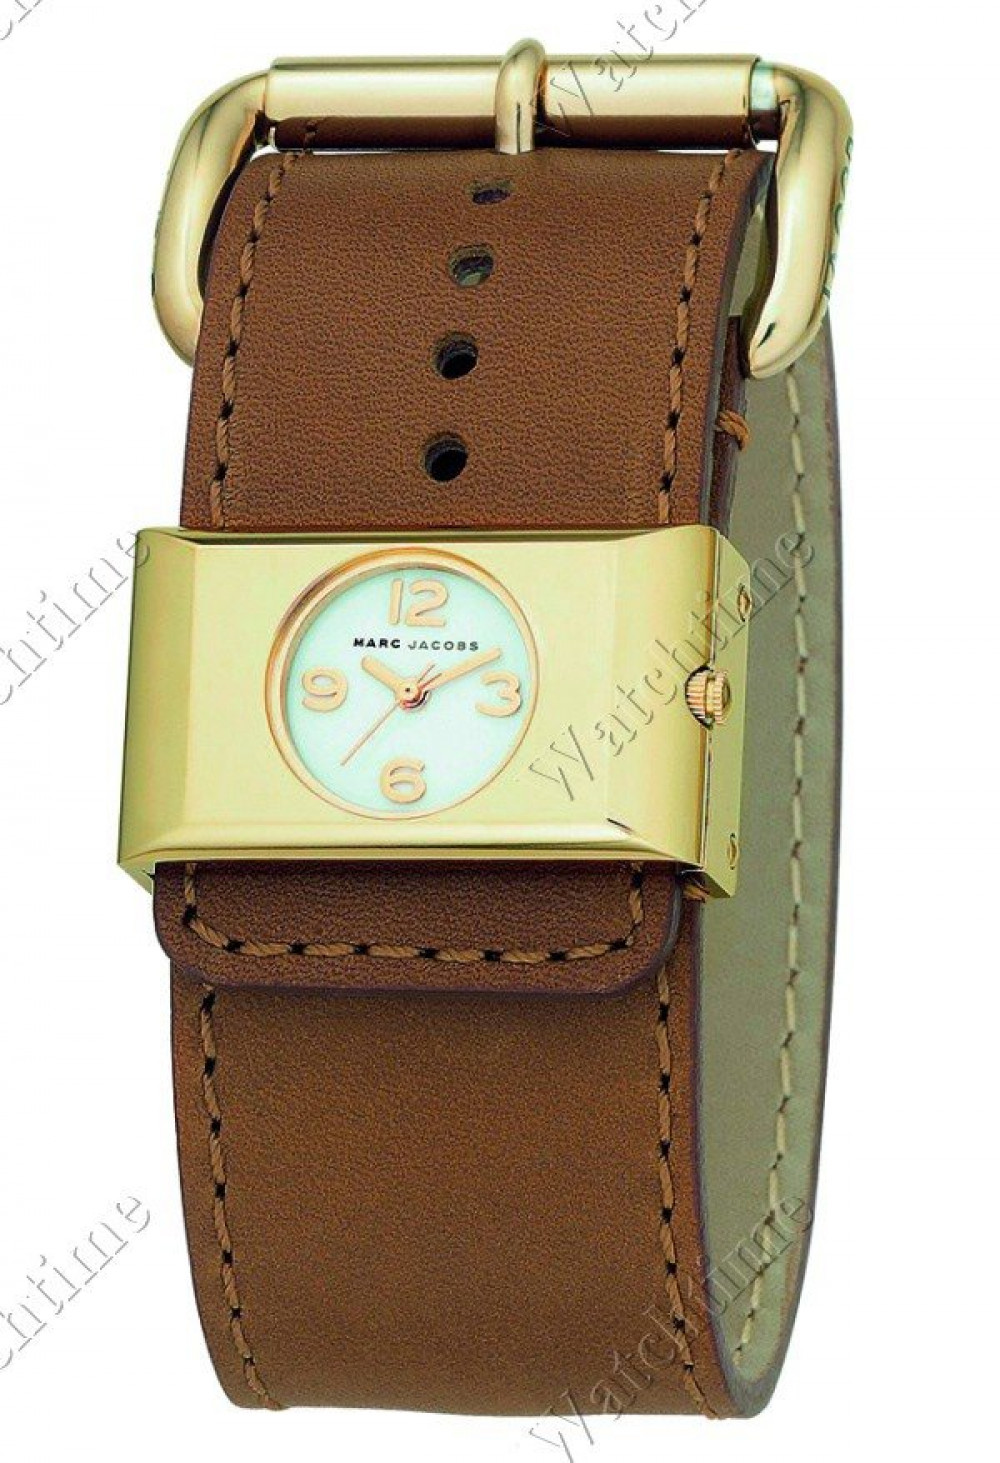 Zegarek firmy Marc by Marc Jacobs, model MBM 1065